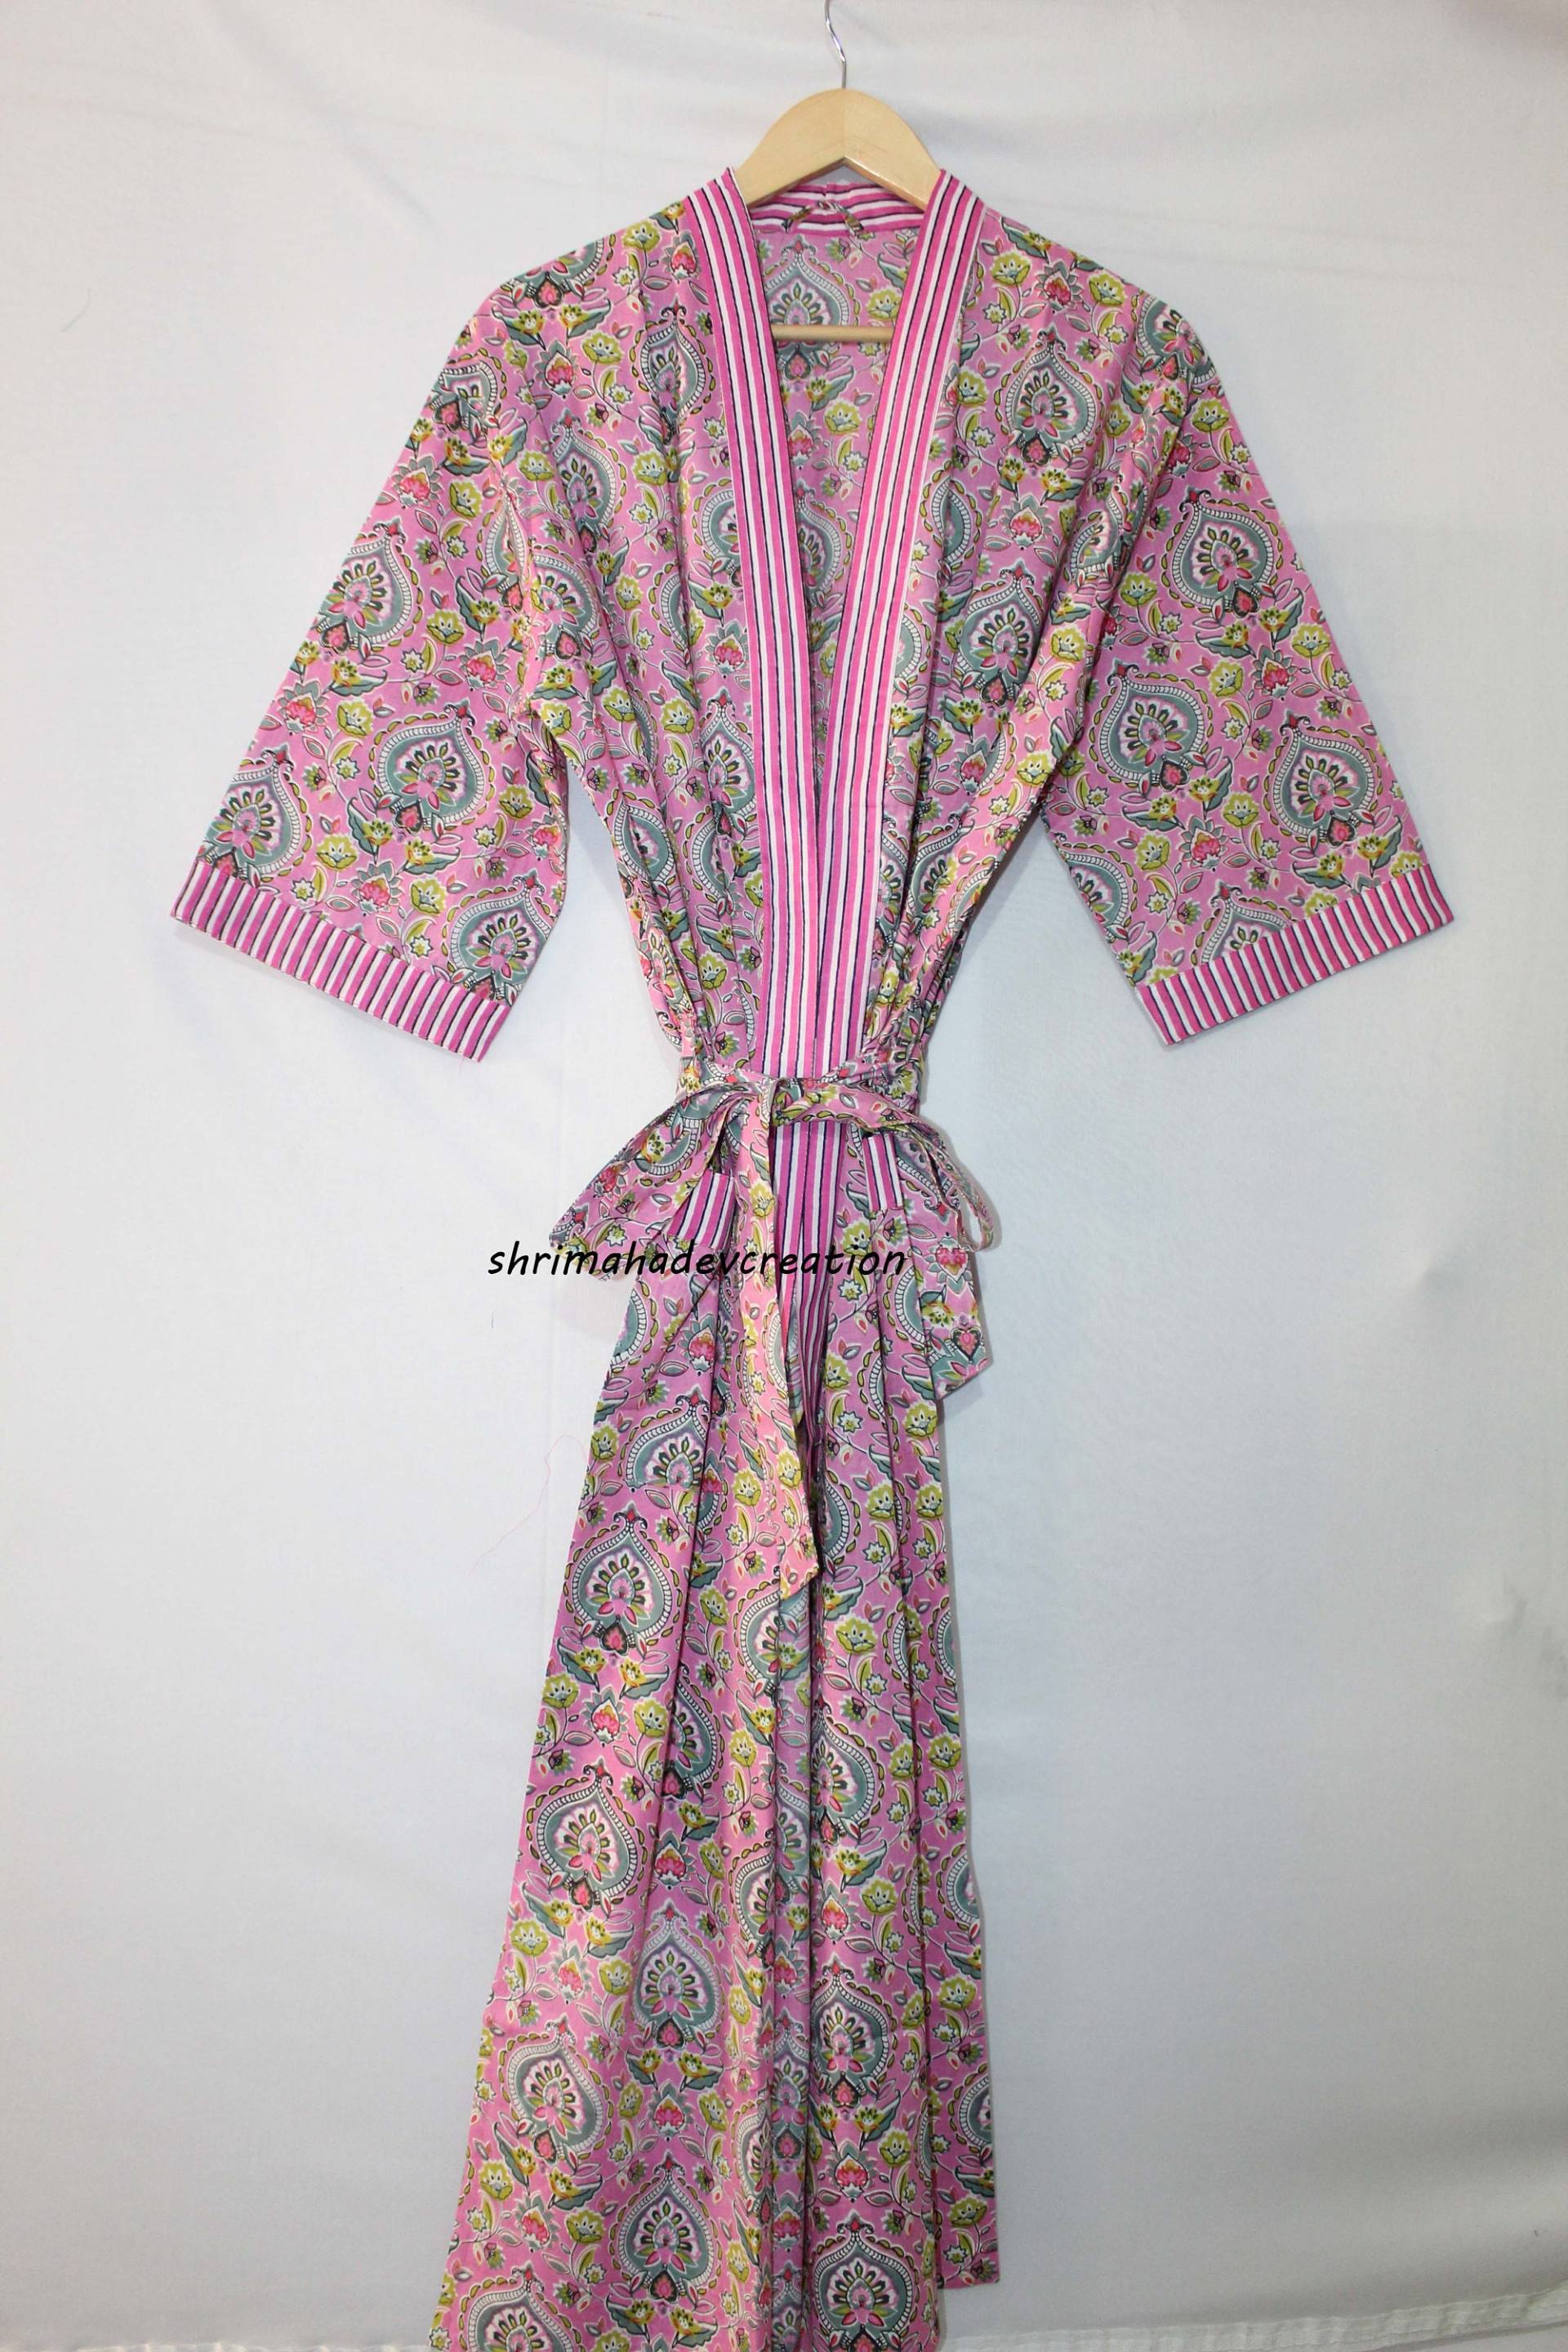 Baumwolle Kimono Robe, Mit Blockprint, Morgenmantel, Damen Vertuschen, Baridemaid Kleid, Brautjungfer Geschenke von shrimahadevcreation